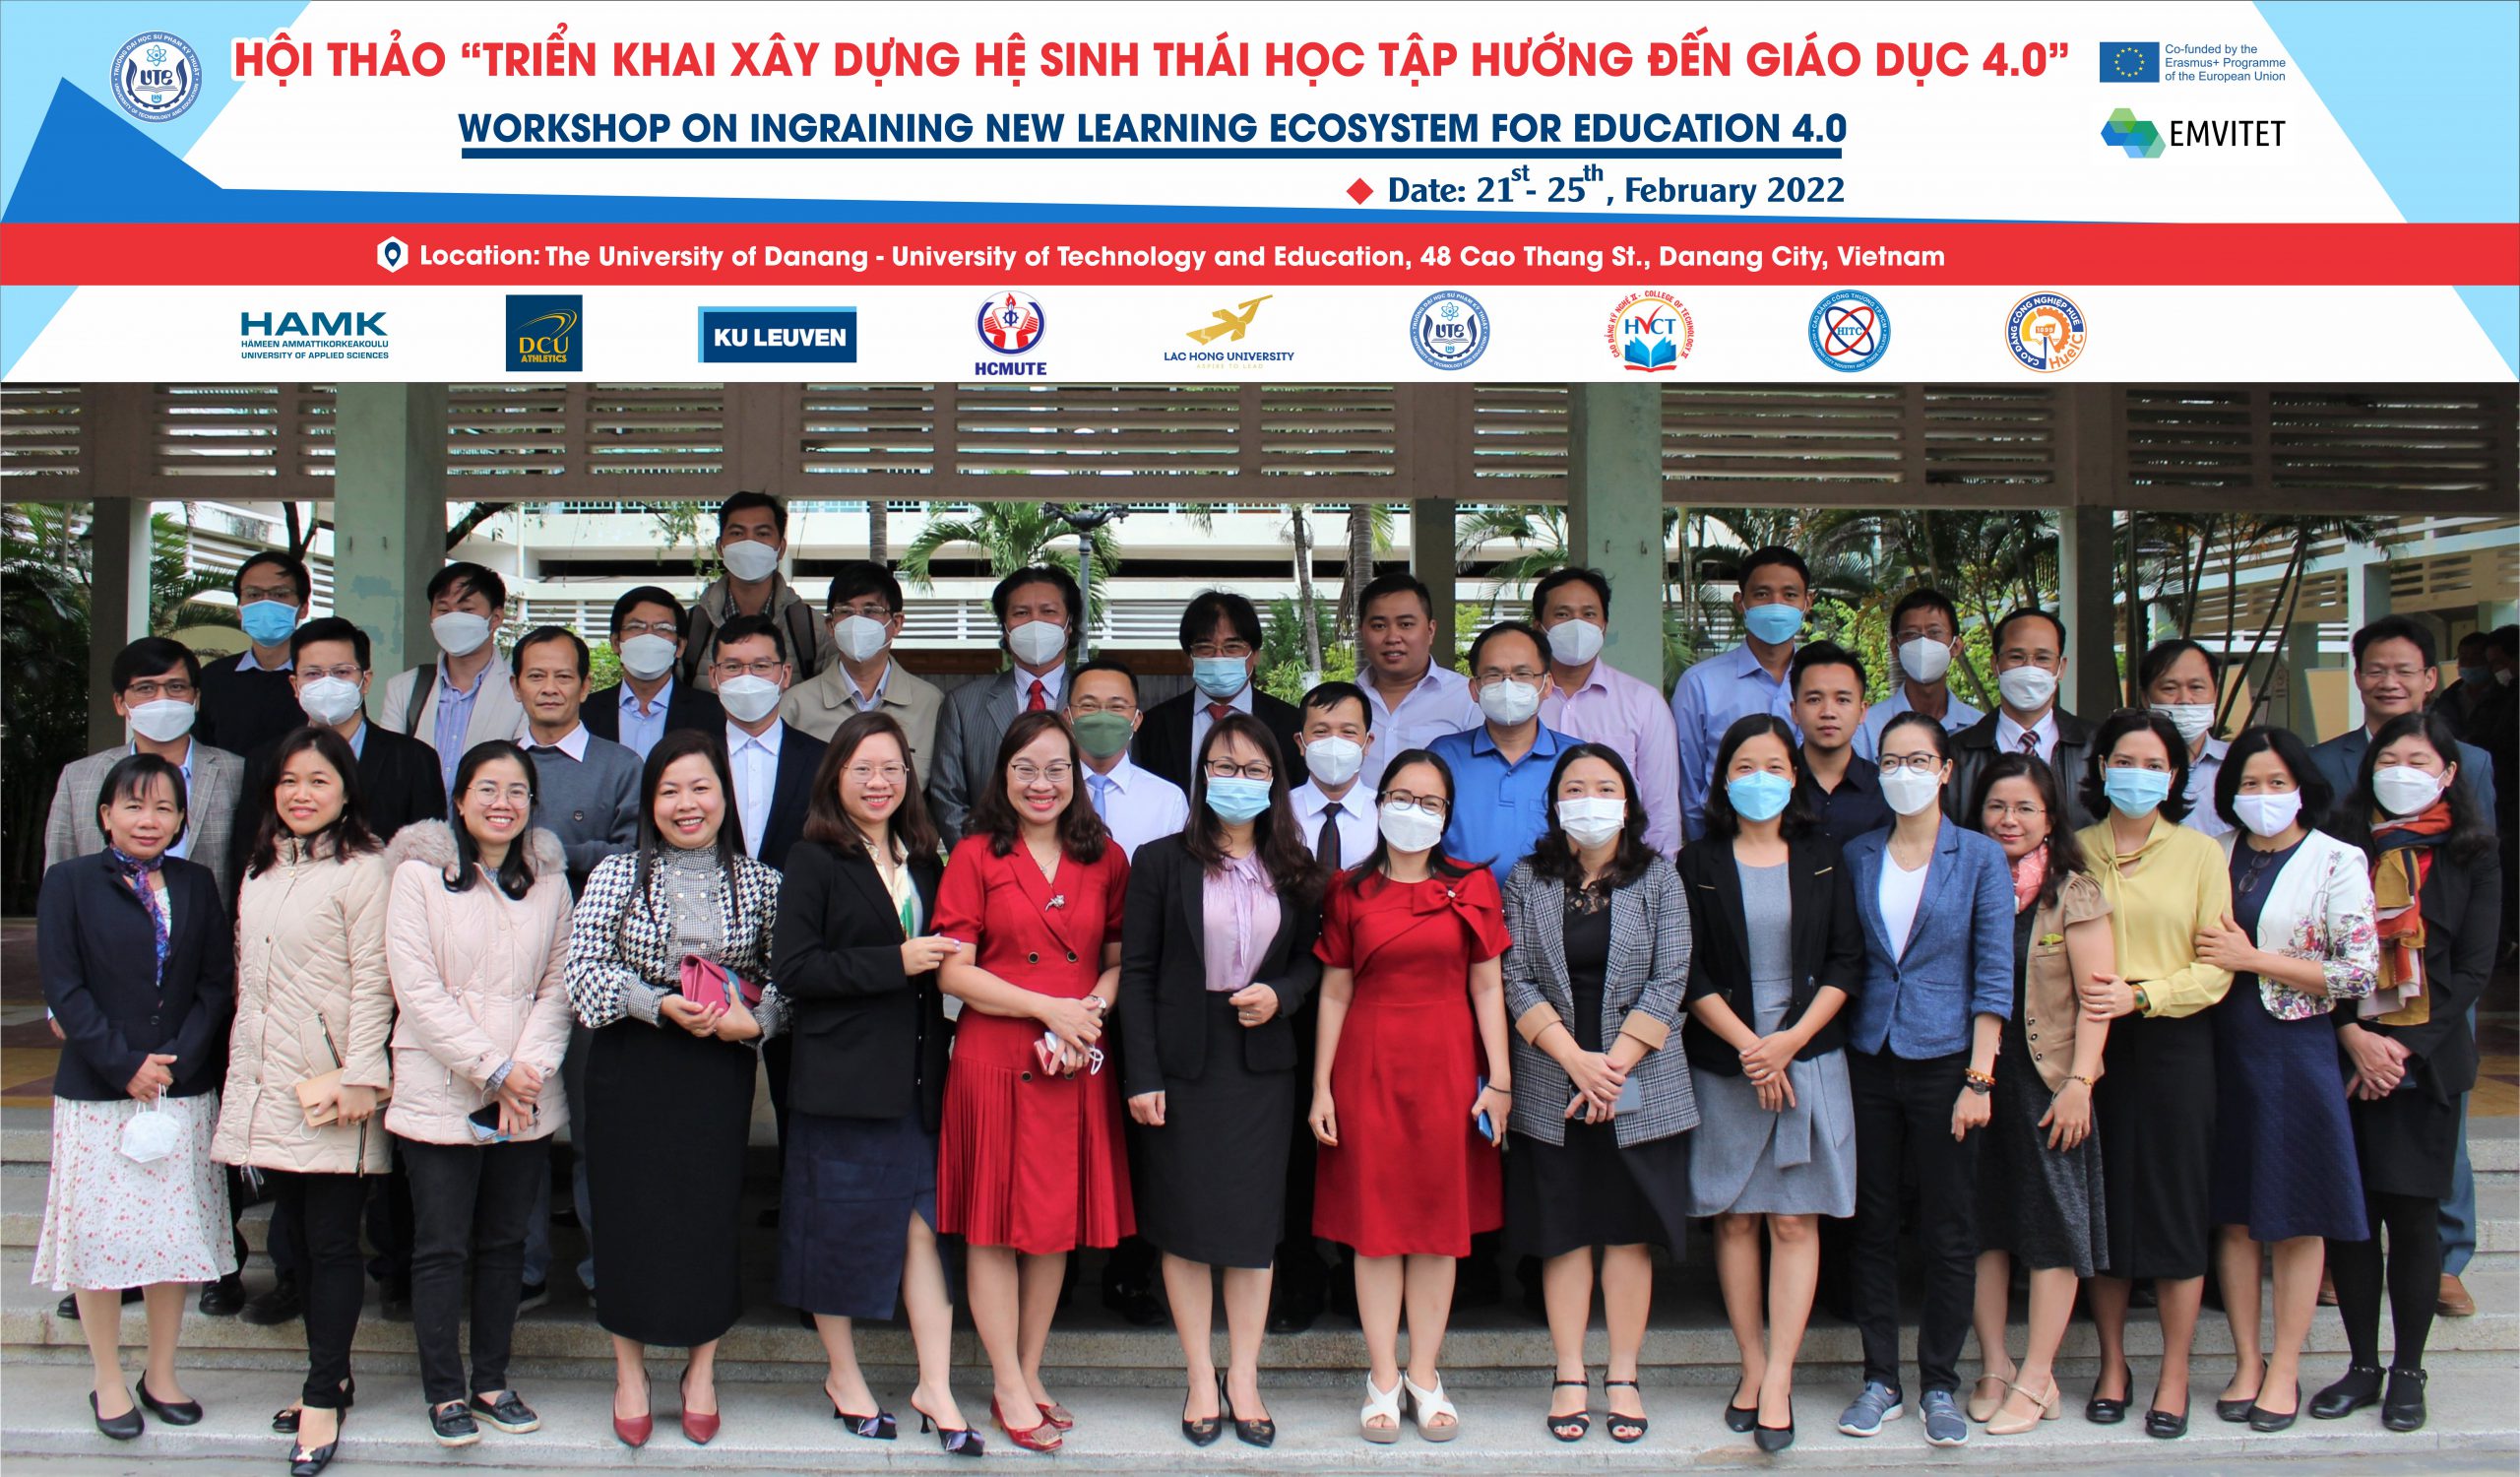 Hội thảo “Triển khai xây dựng hệ sinh thái học tập hướng đến giáo dục 4.0” tại Đà Nẵng trong khuôn khổ dự án EMVITET